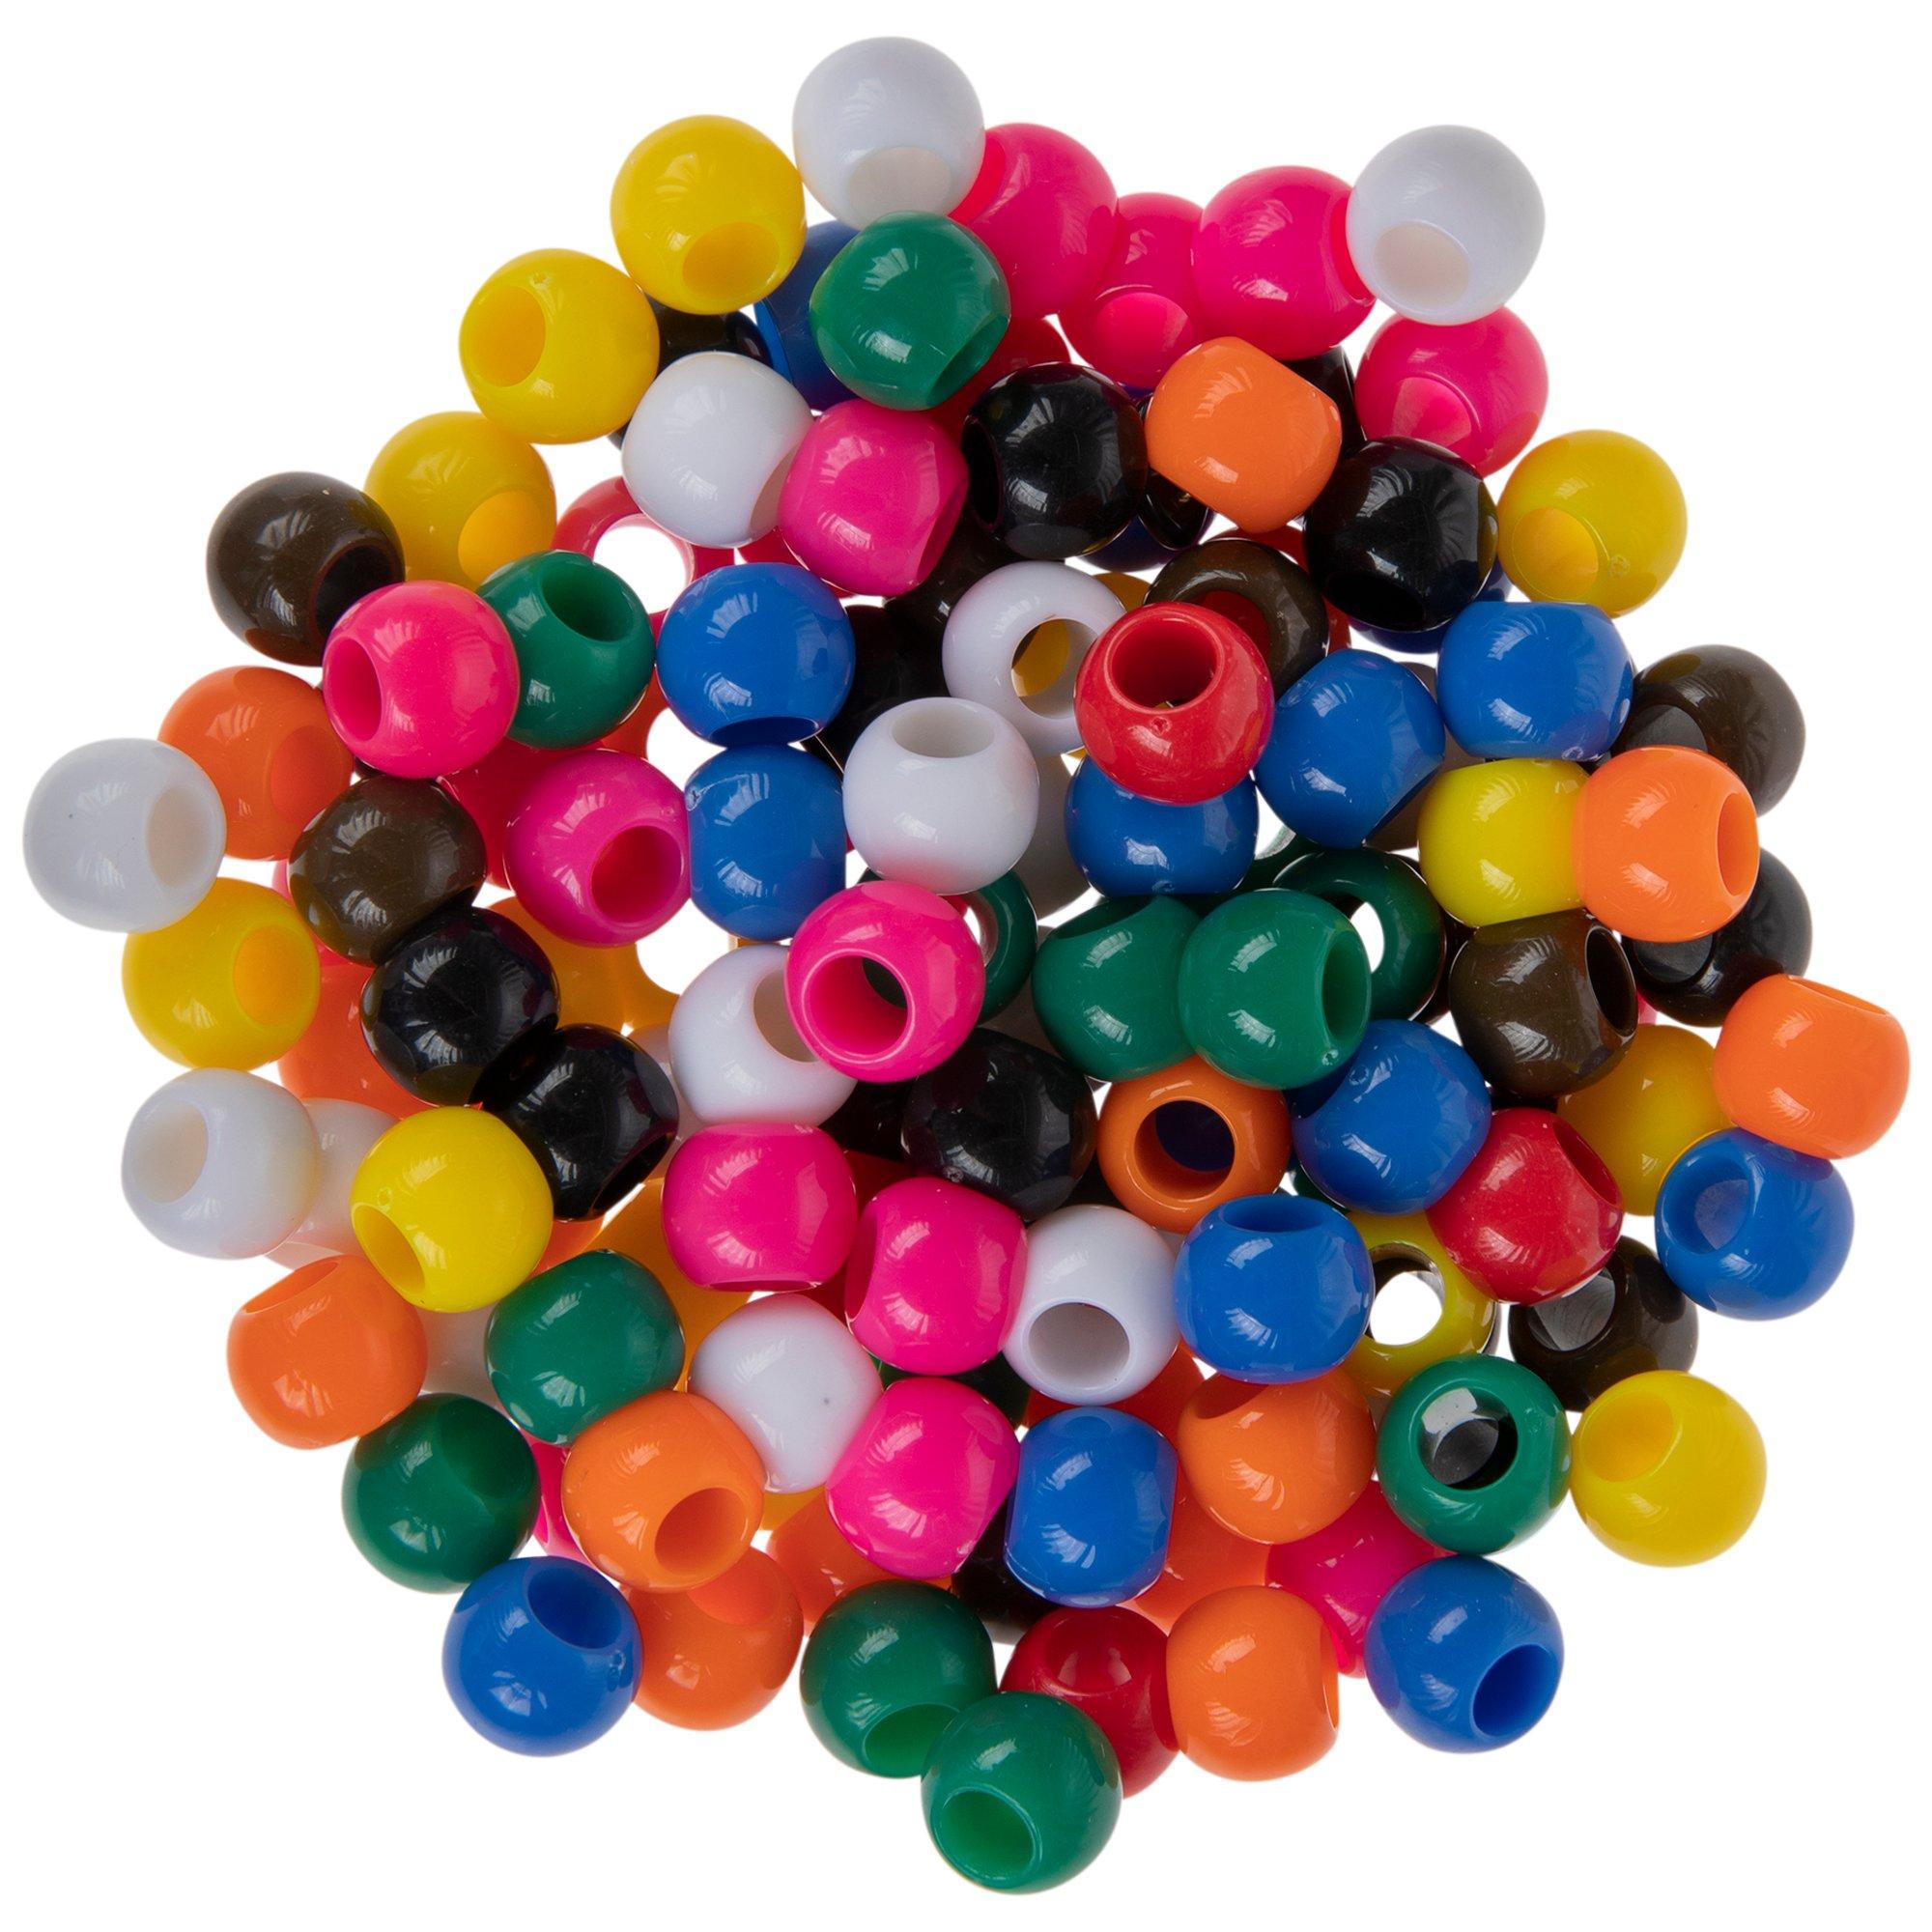 Assorted Round Plastic Beads, Hobby Lobby